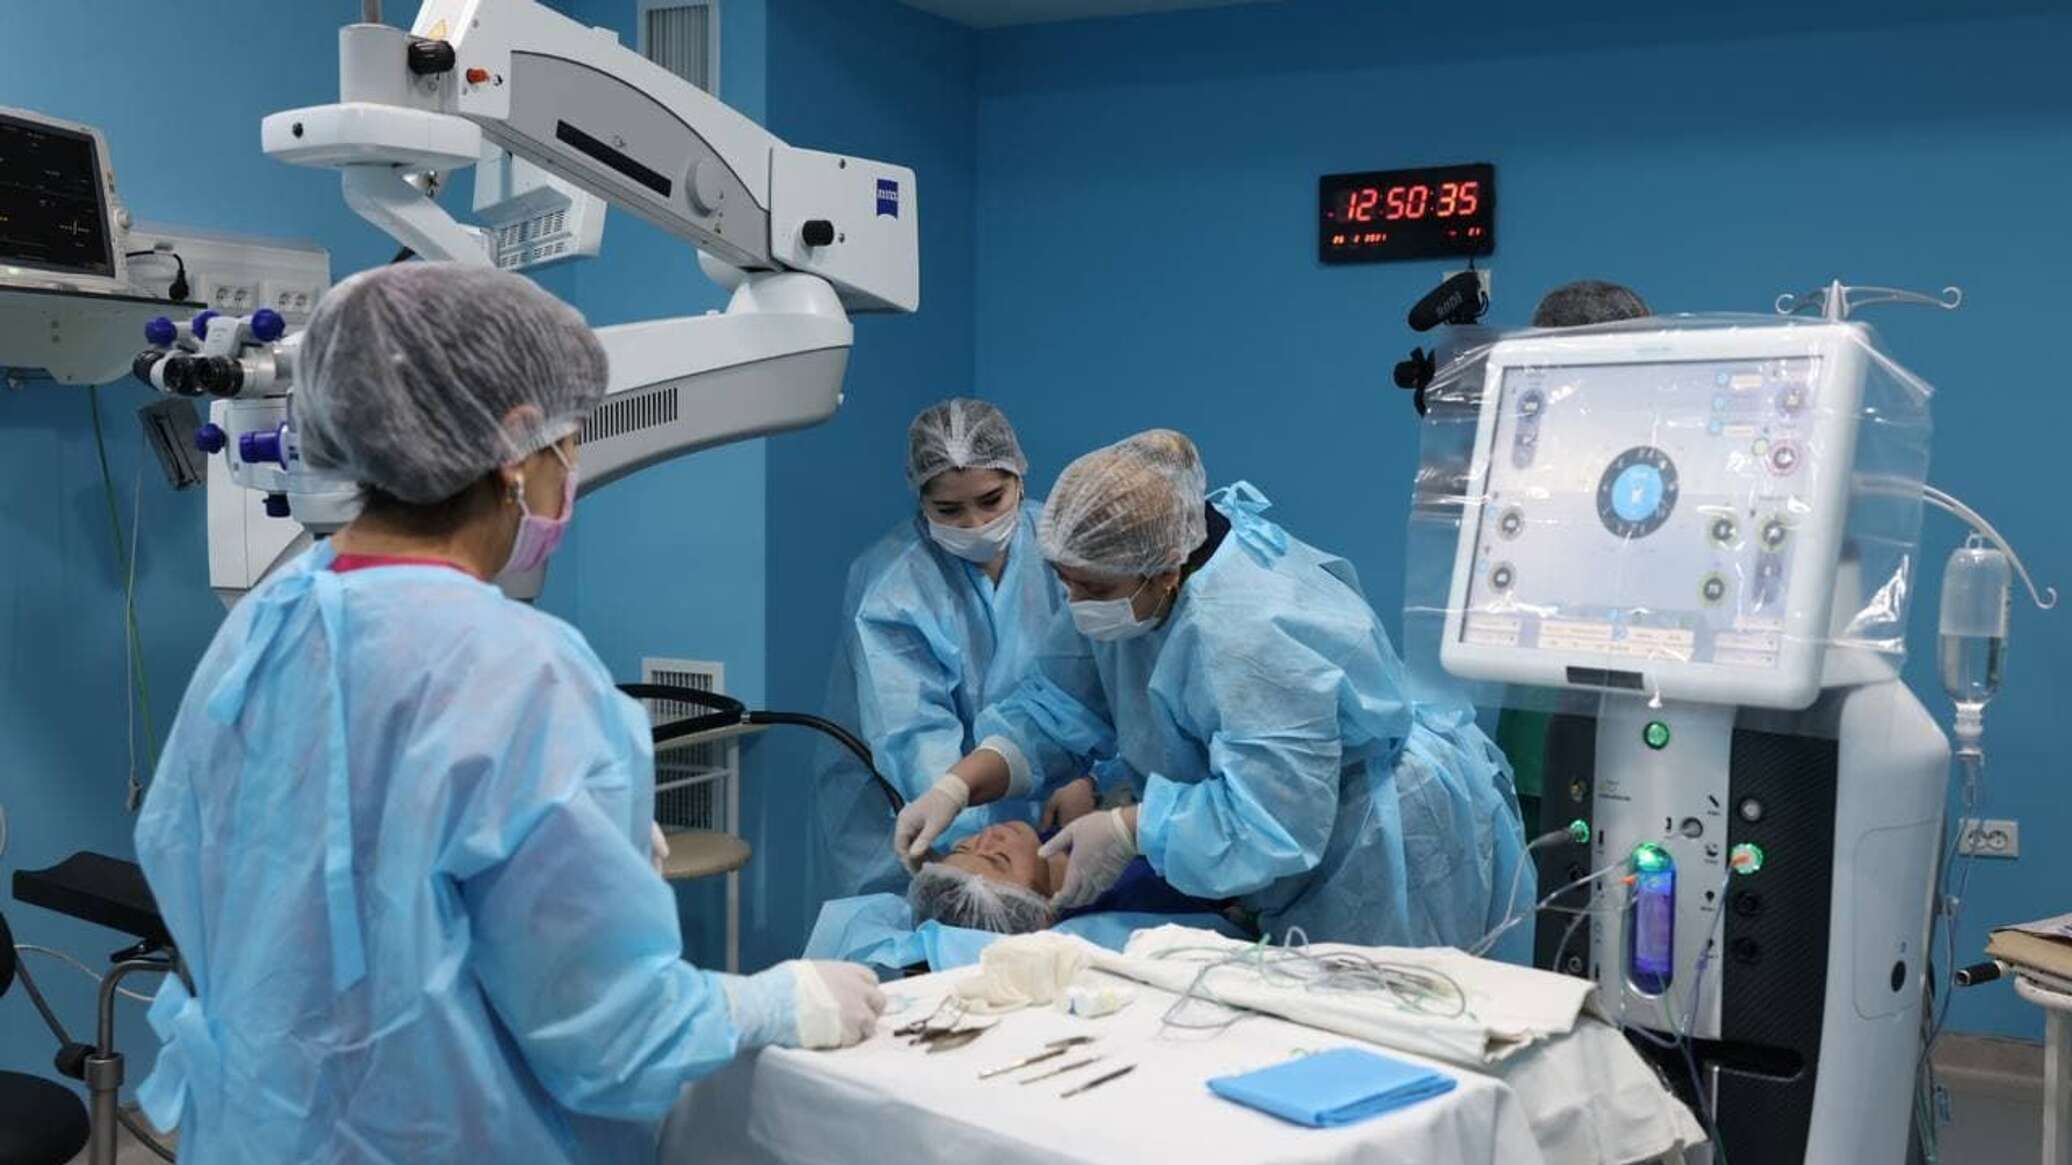 “Кўнгил Кўзи” лойиҳаси. Первая трансплантация роговицы в мире. Ko'ngil ko'zi loyihasi. Саломатлик фото. Операция в 2021 году